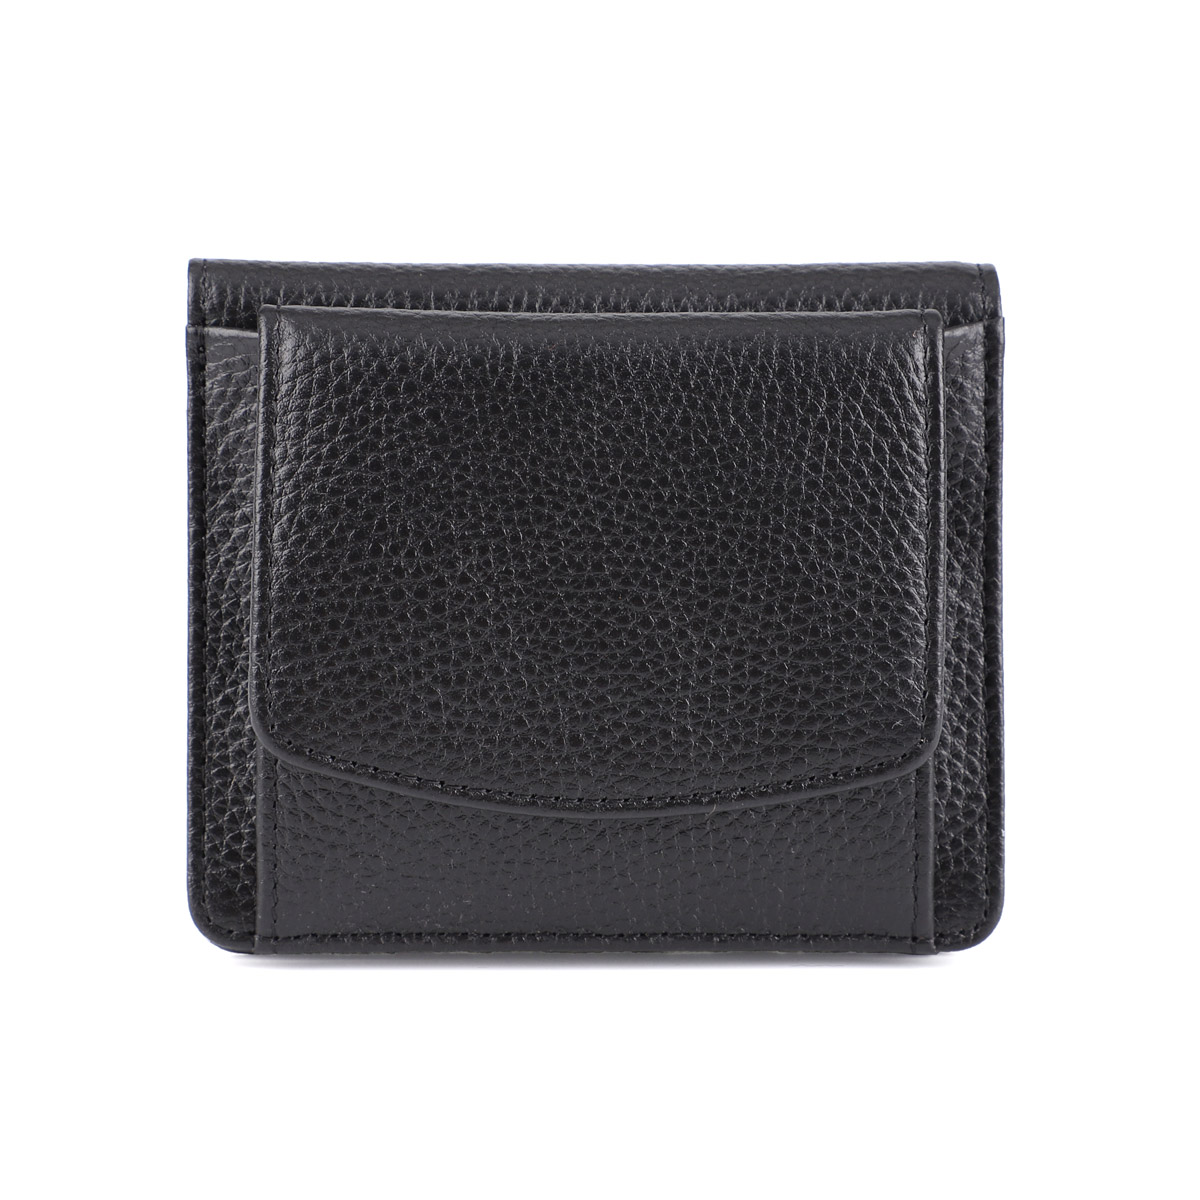 二つ折り財布 レディース BOX型小銭入れ 財布 ミニ財布 薄い キャッシュレス コンパクト 本革 レザー 薄型 財布 スキミング防止 LIZDAYS  リズデイズ